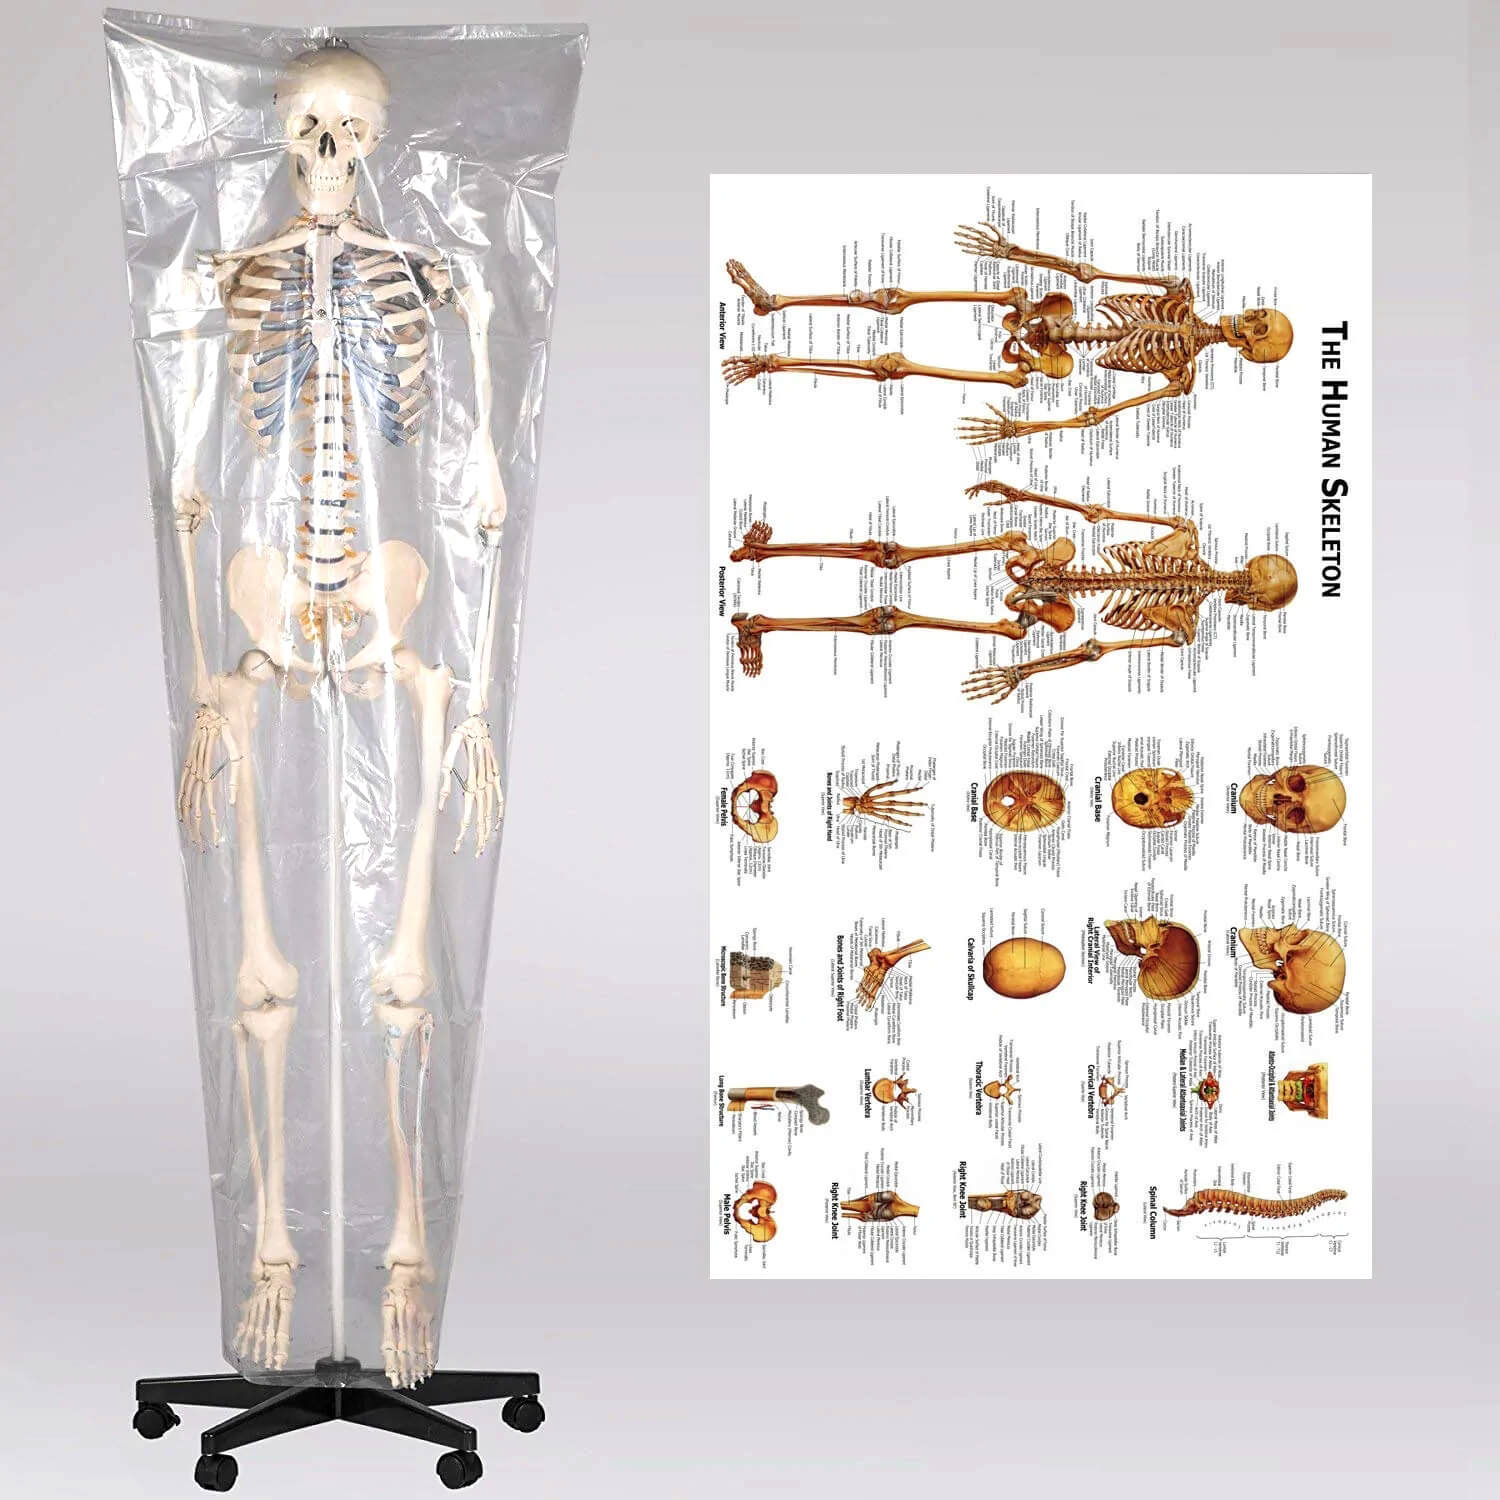 RONTEN 70.8"Human Skeleton Model Life Size Anatomical Skeleton Model